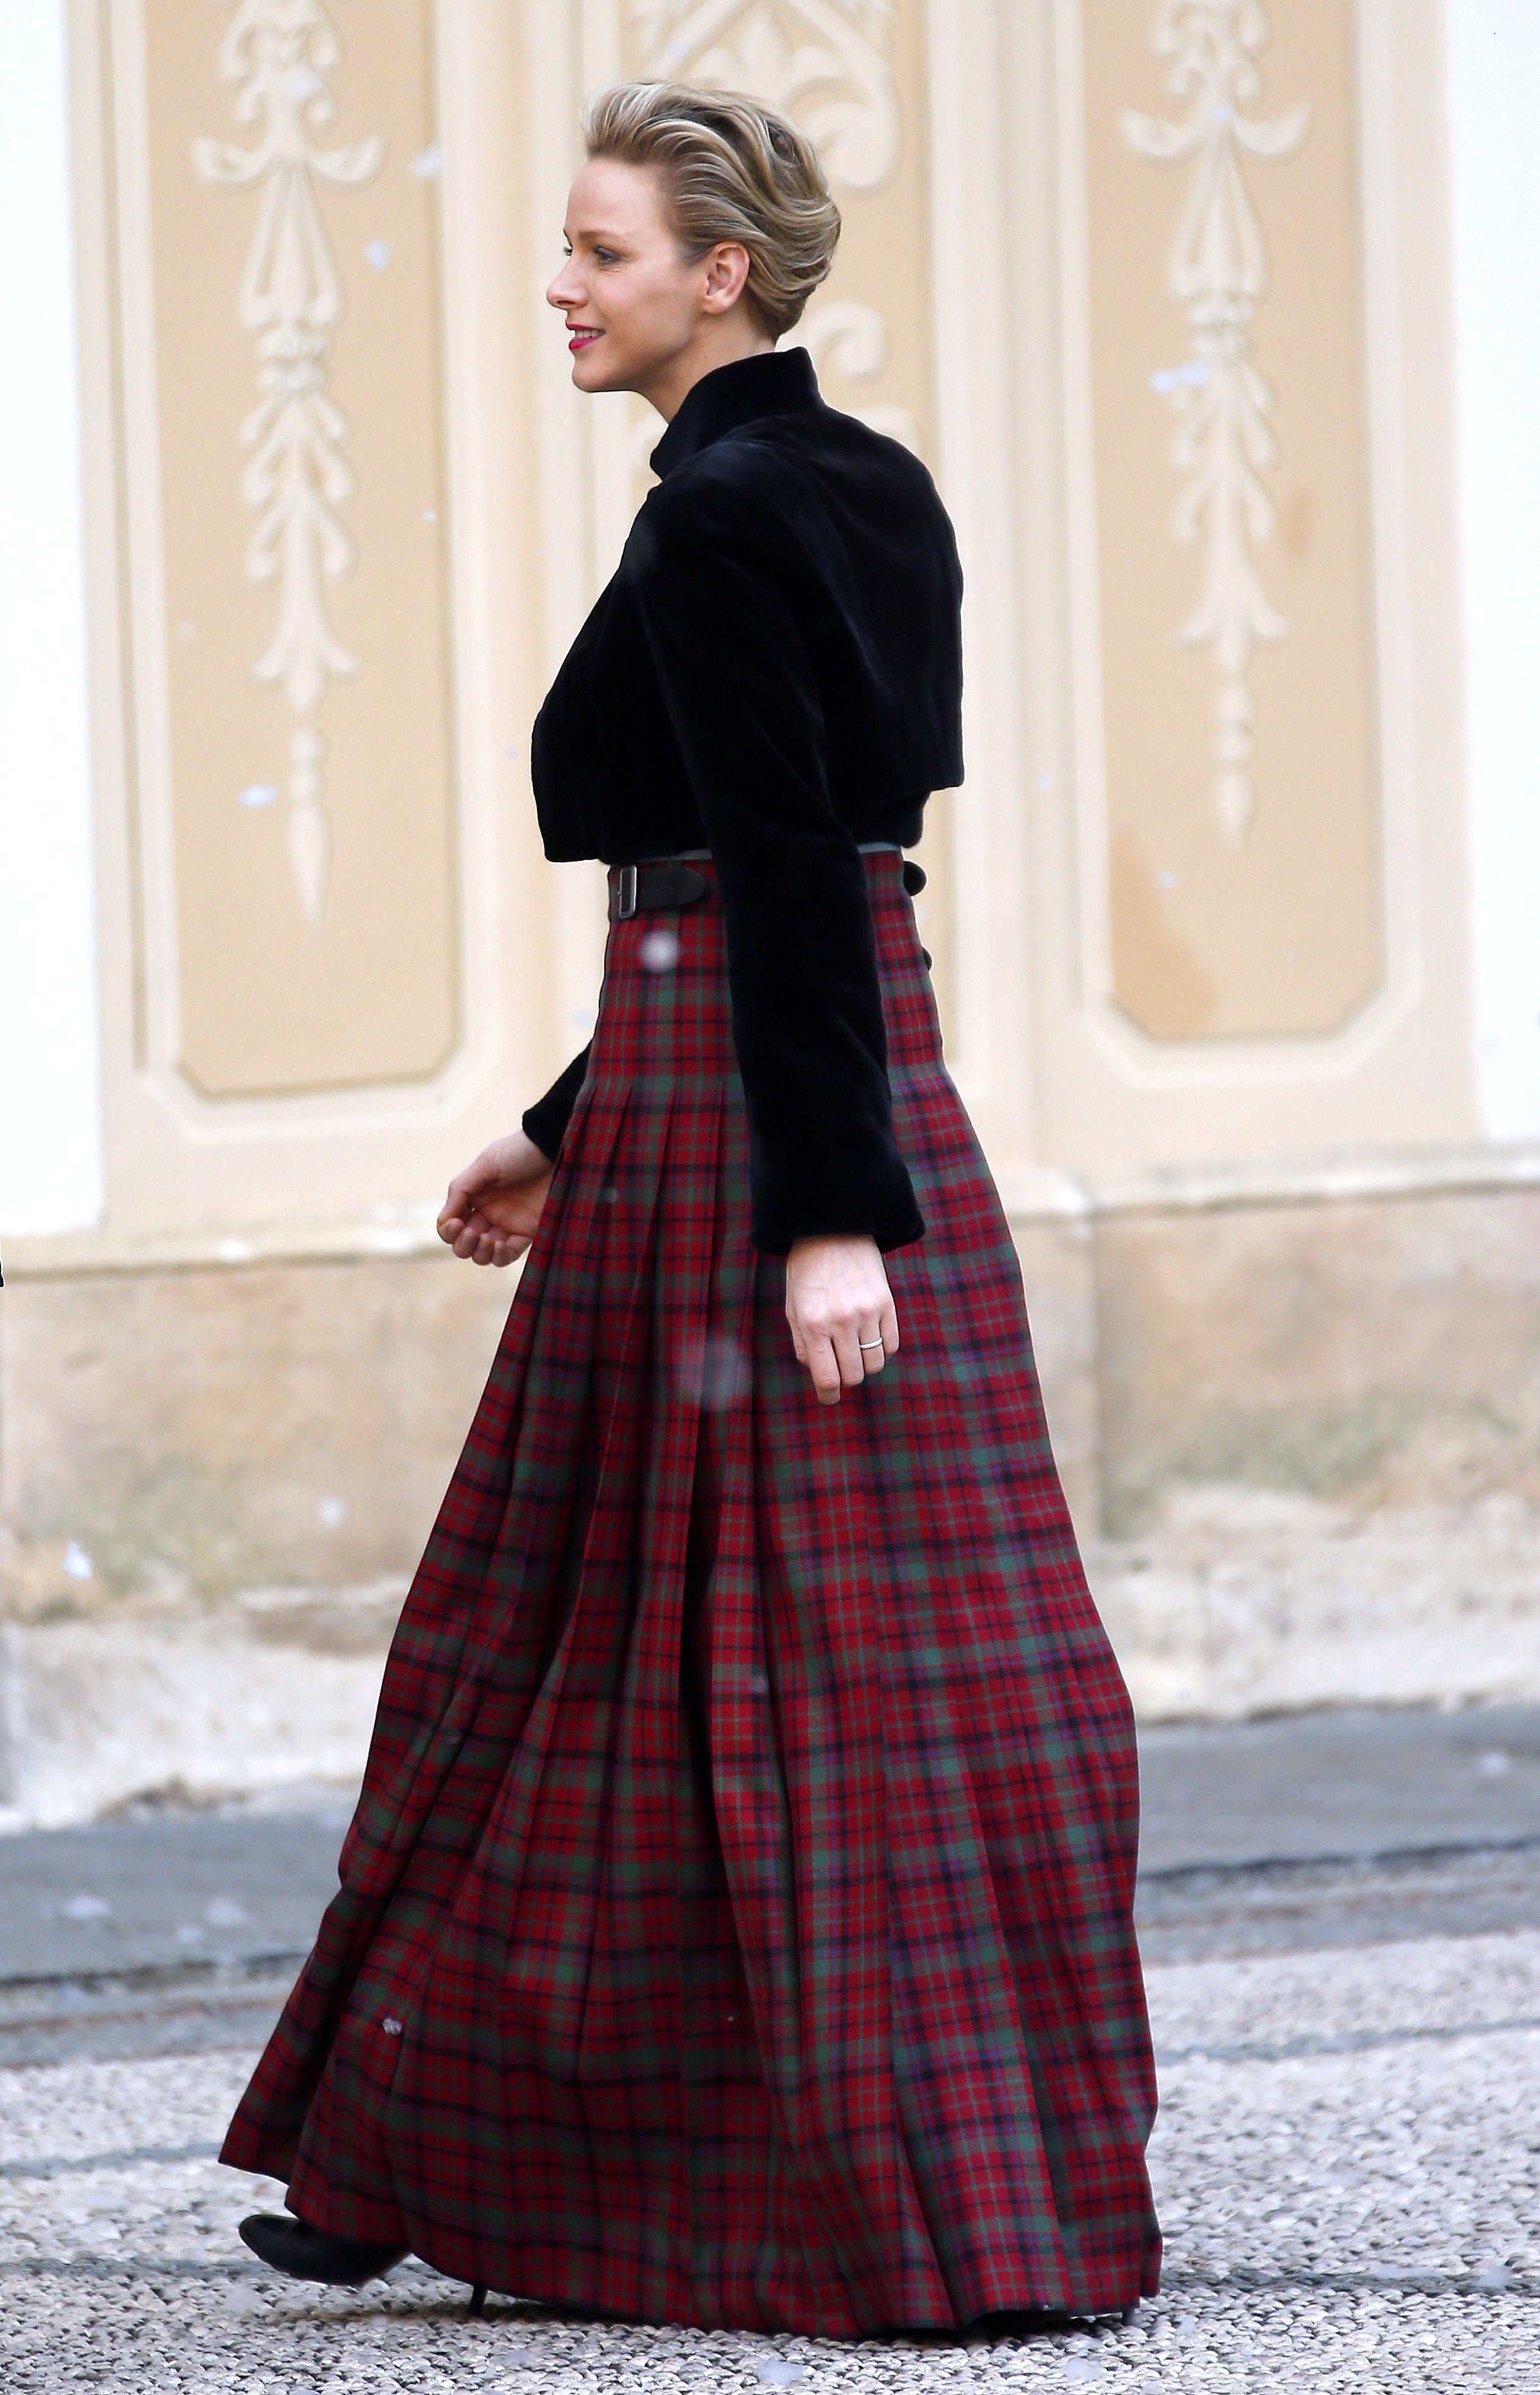 Een perfecte outfit voor een kerstevent op het prinselijk paleis, 18 december 2013.